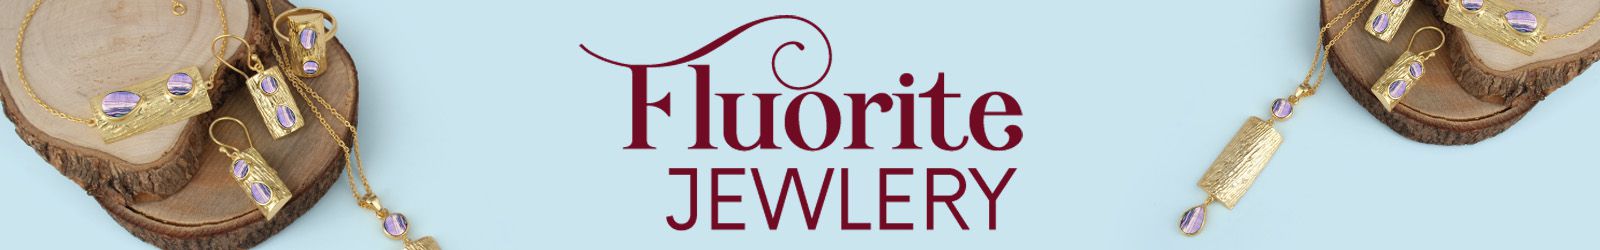 Silver Fluorite Jewelry Wholesale Supplier